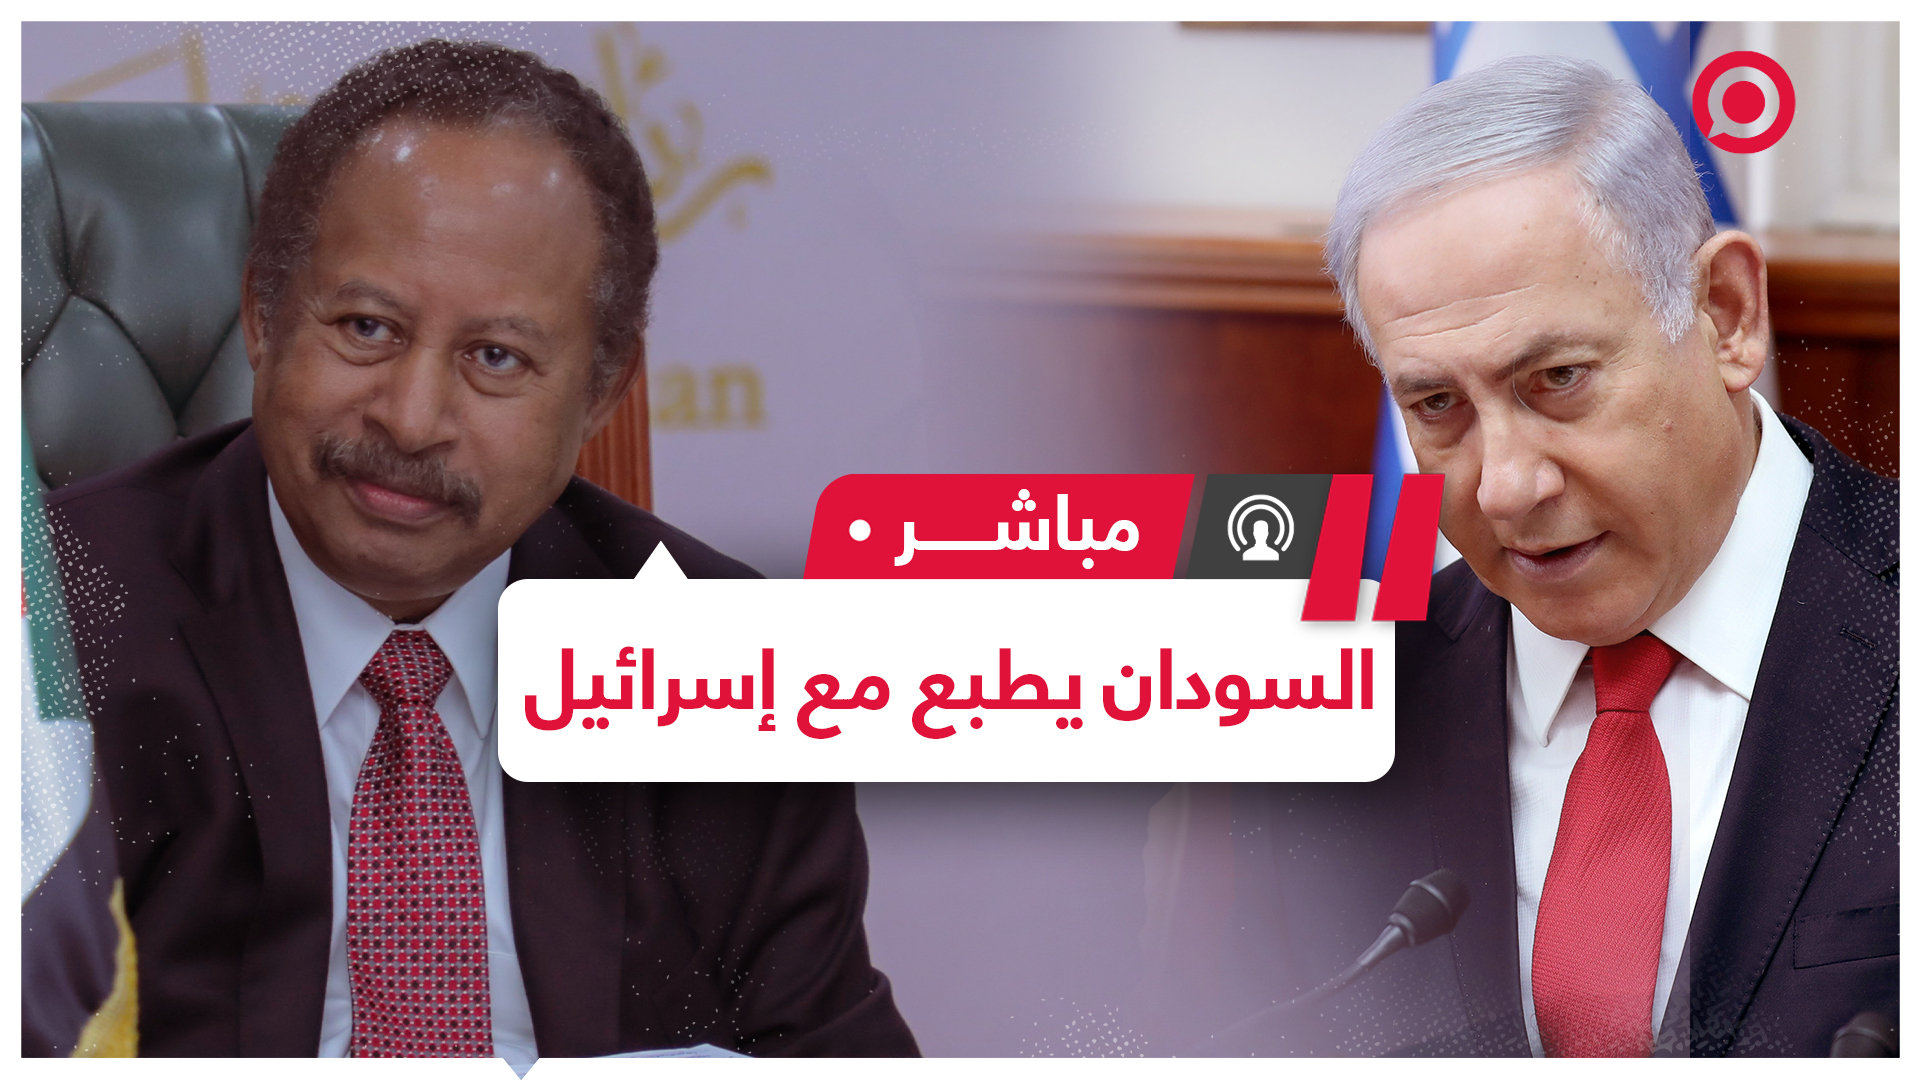 بيان أمريكي سوداني إسرائيلي: الخرطوم وتل أبيب اتفقتا على تطبيع العلاقات بينهما